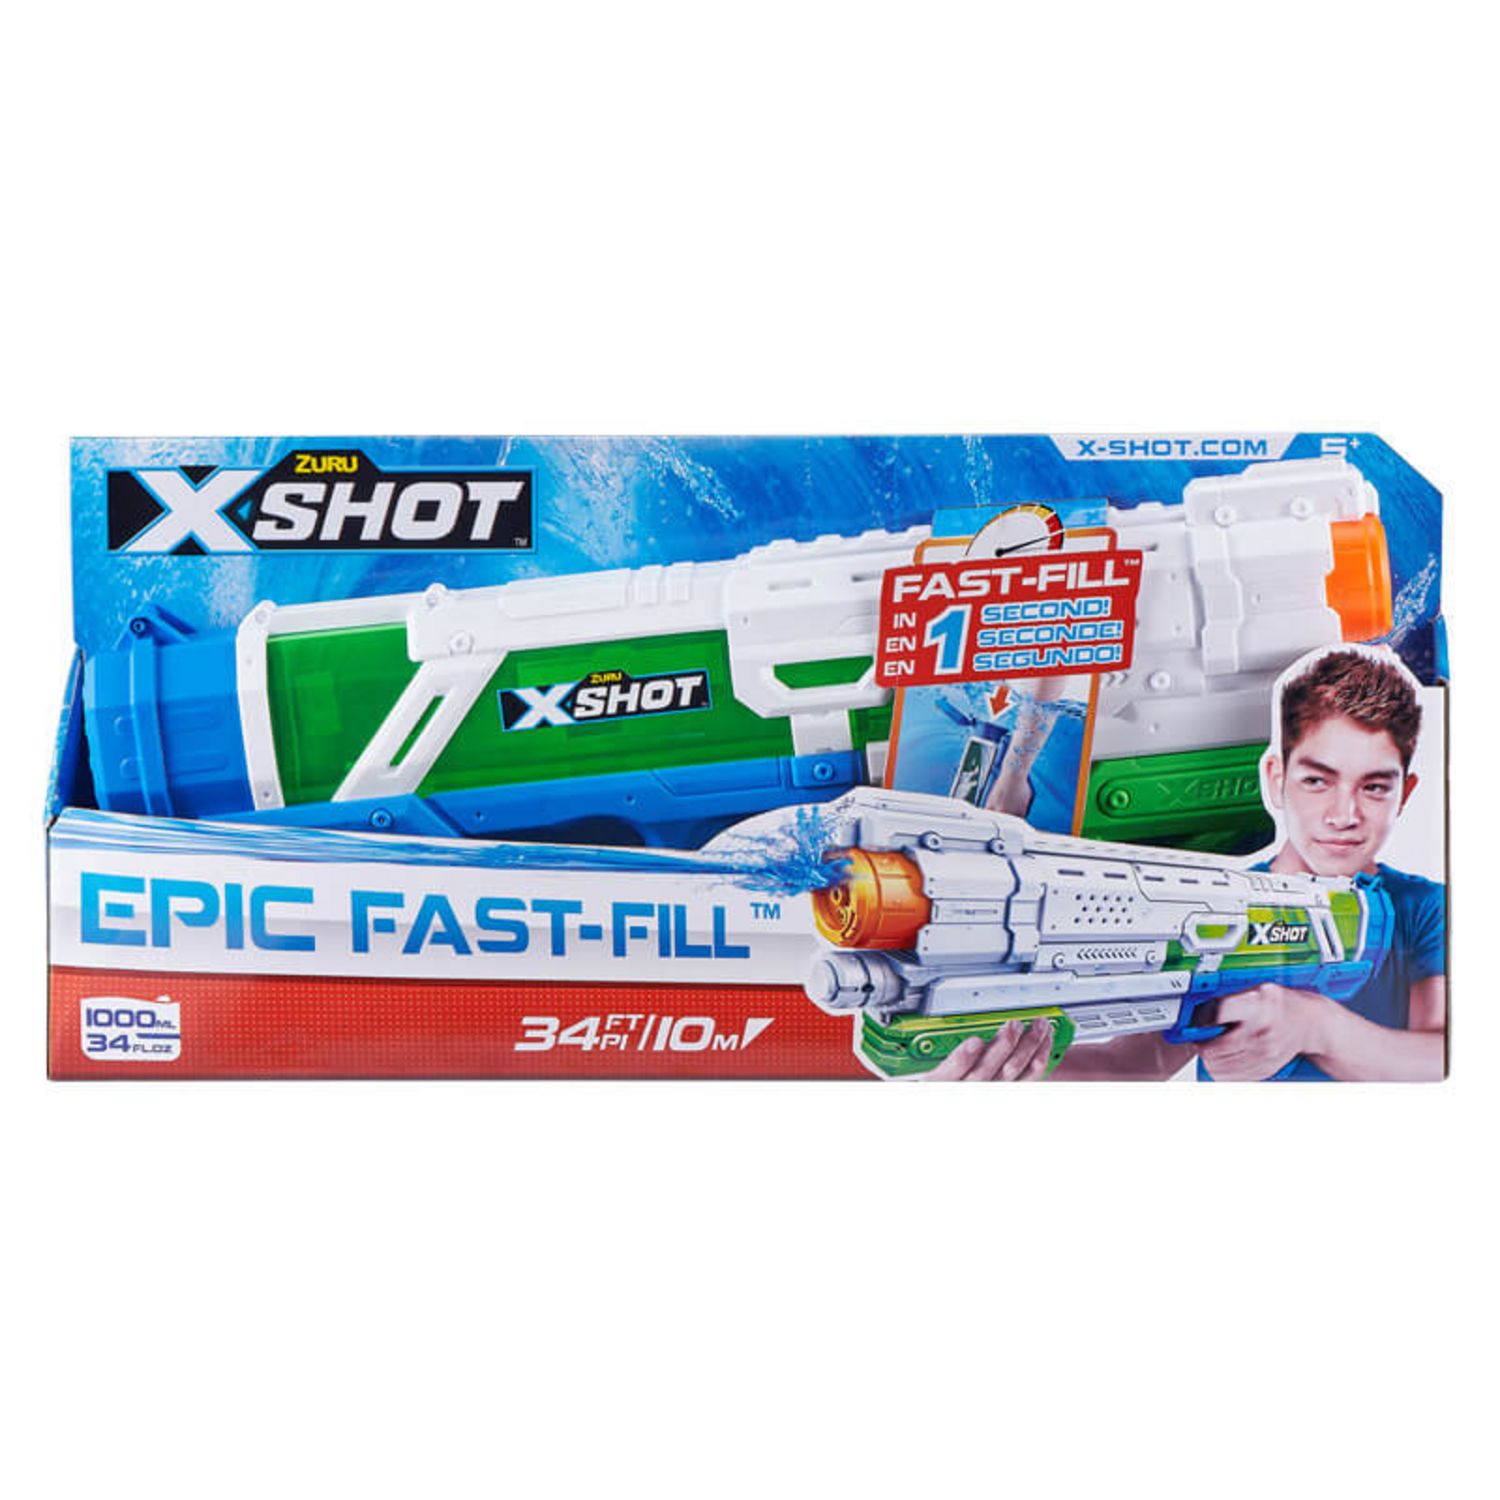 Pistolet à eau : Xshot fast fill